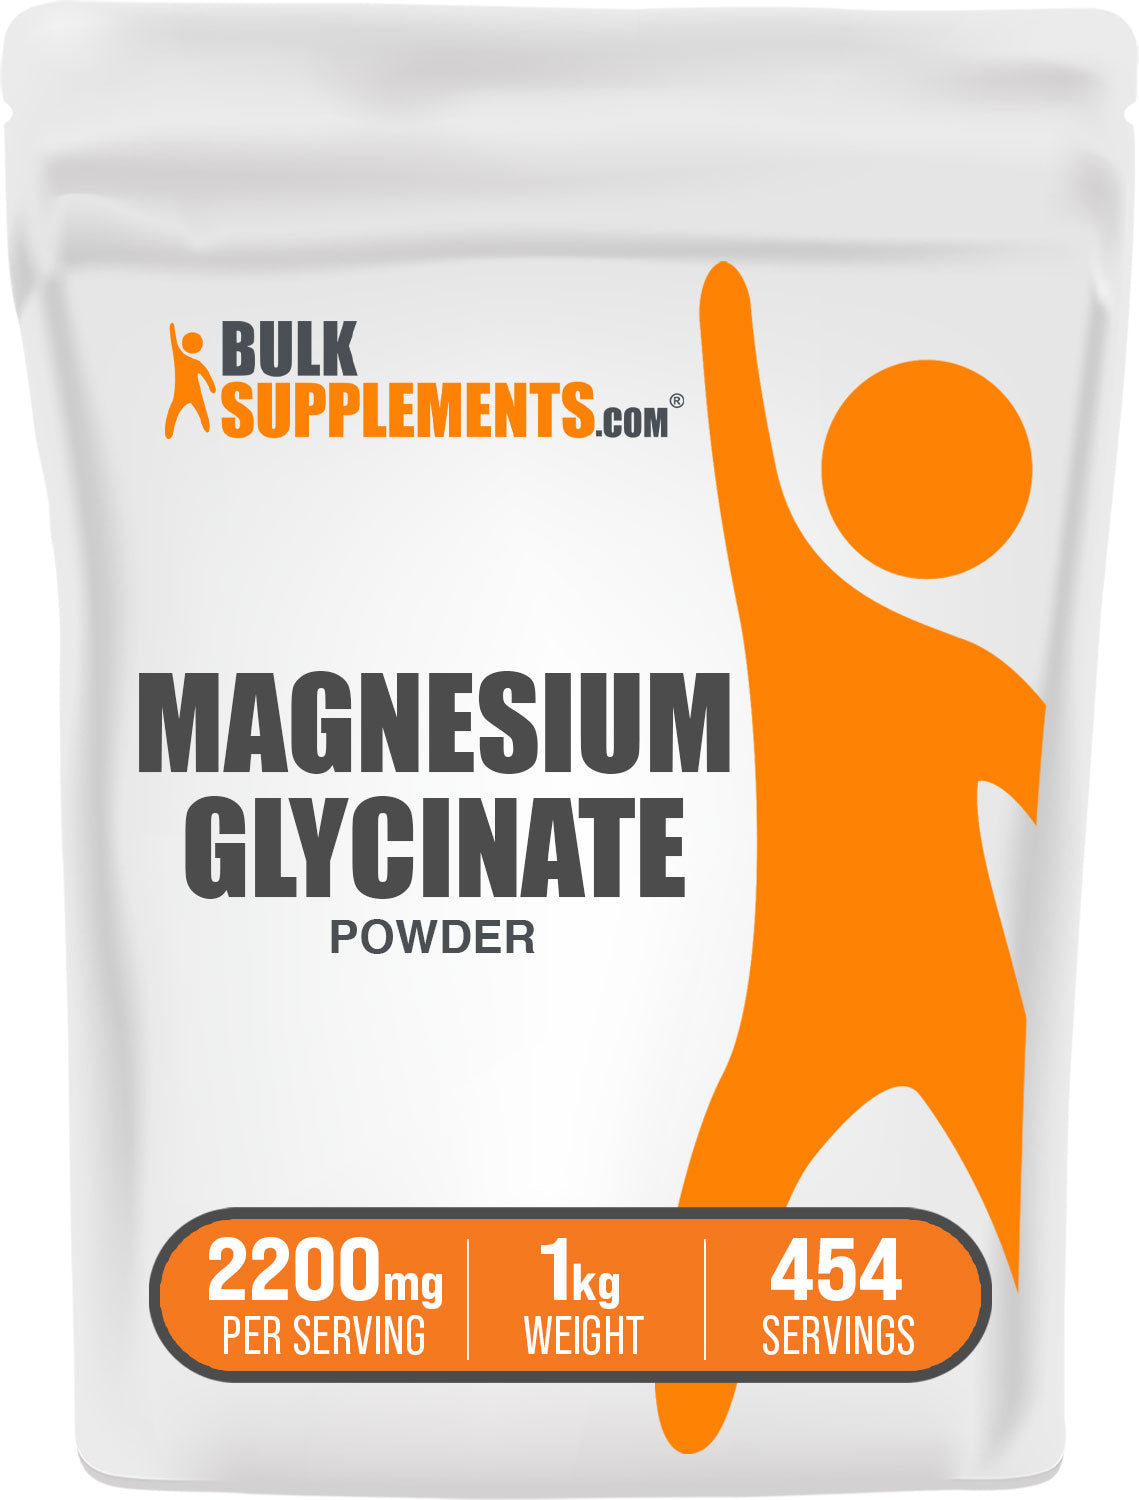 Magnesium glycinate pure magnesium glycinate 1kg bag